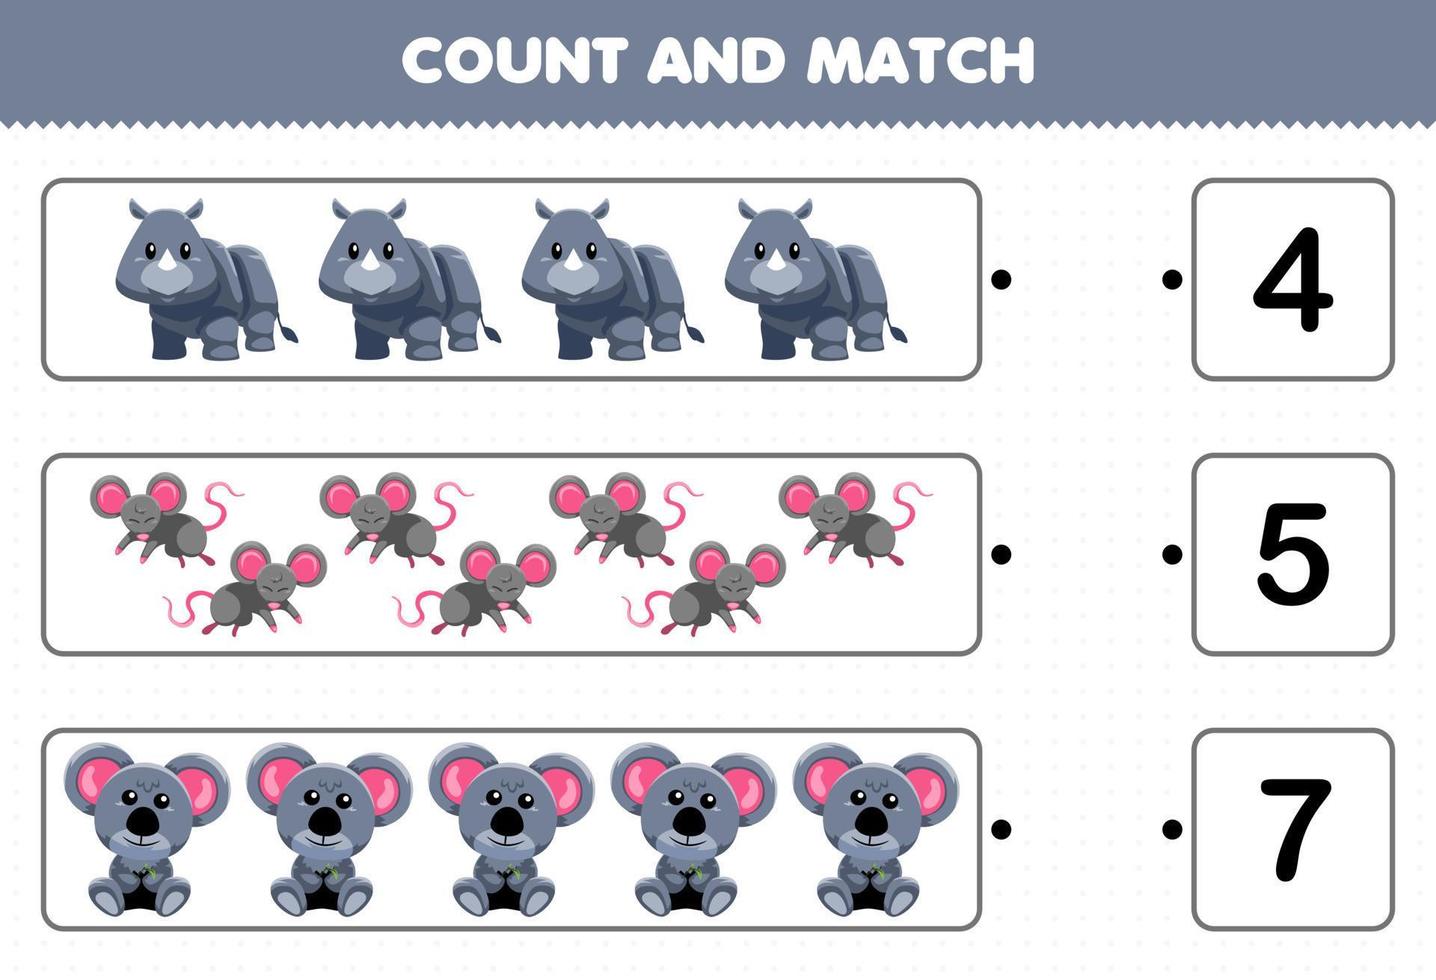 juego educativo para niños contar y combinar contar el número de dibujos animados lindo animal gris rinoceronte ratón koala y combinar con los números correctos hoja de trabajo imprimible vector